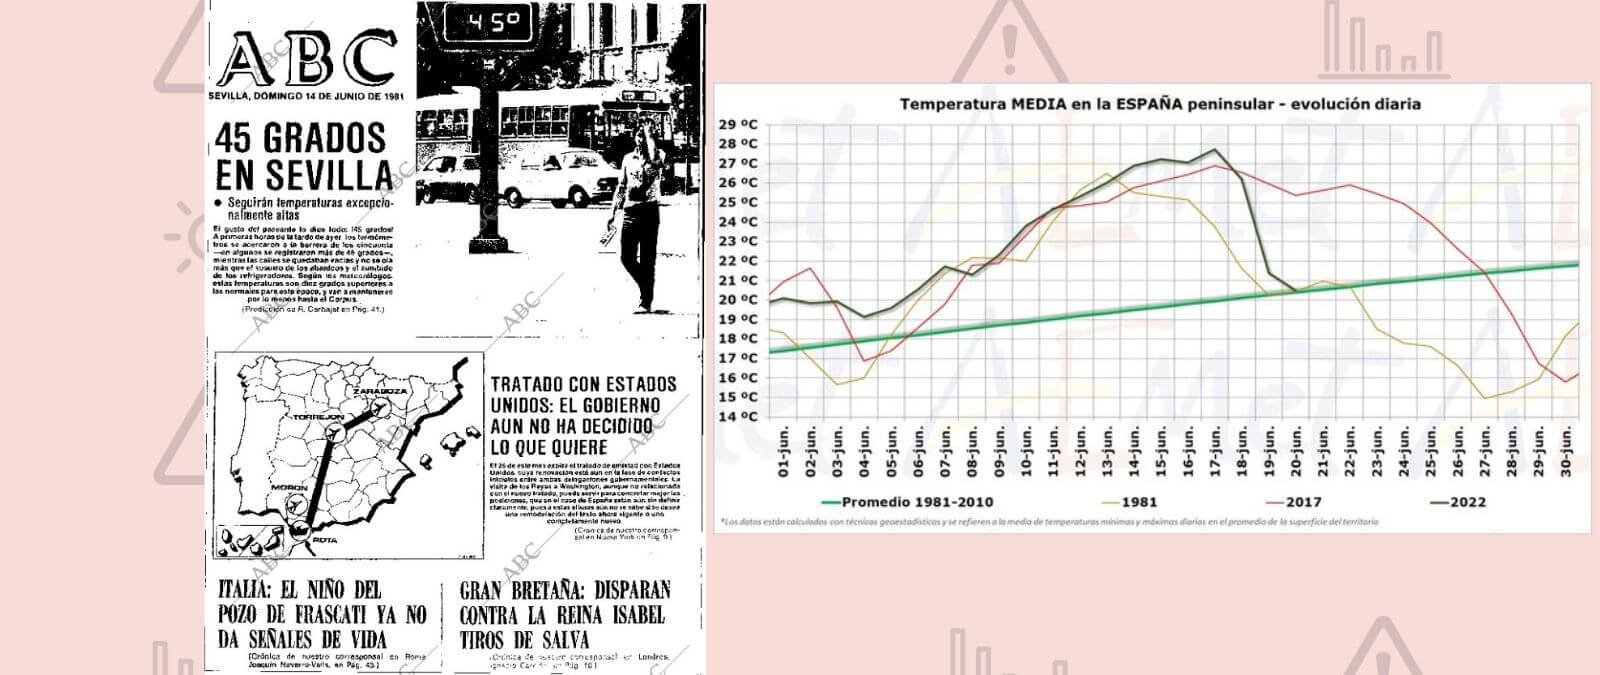 La ola de calor de junio de 2022 ha sido más intensa que la de junio de 1981 · Maldita.es - Periodismo para que no te la cuelen